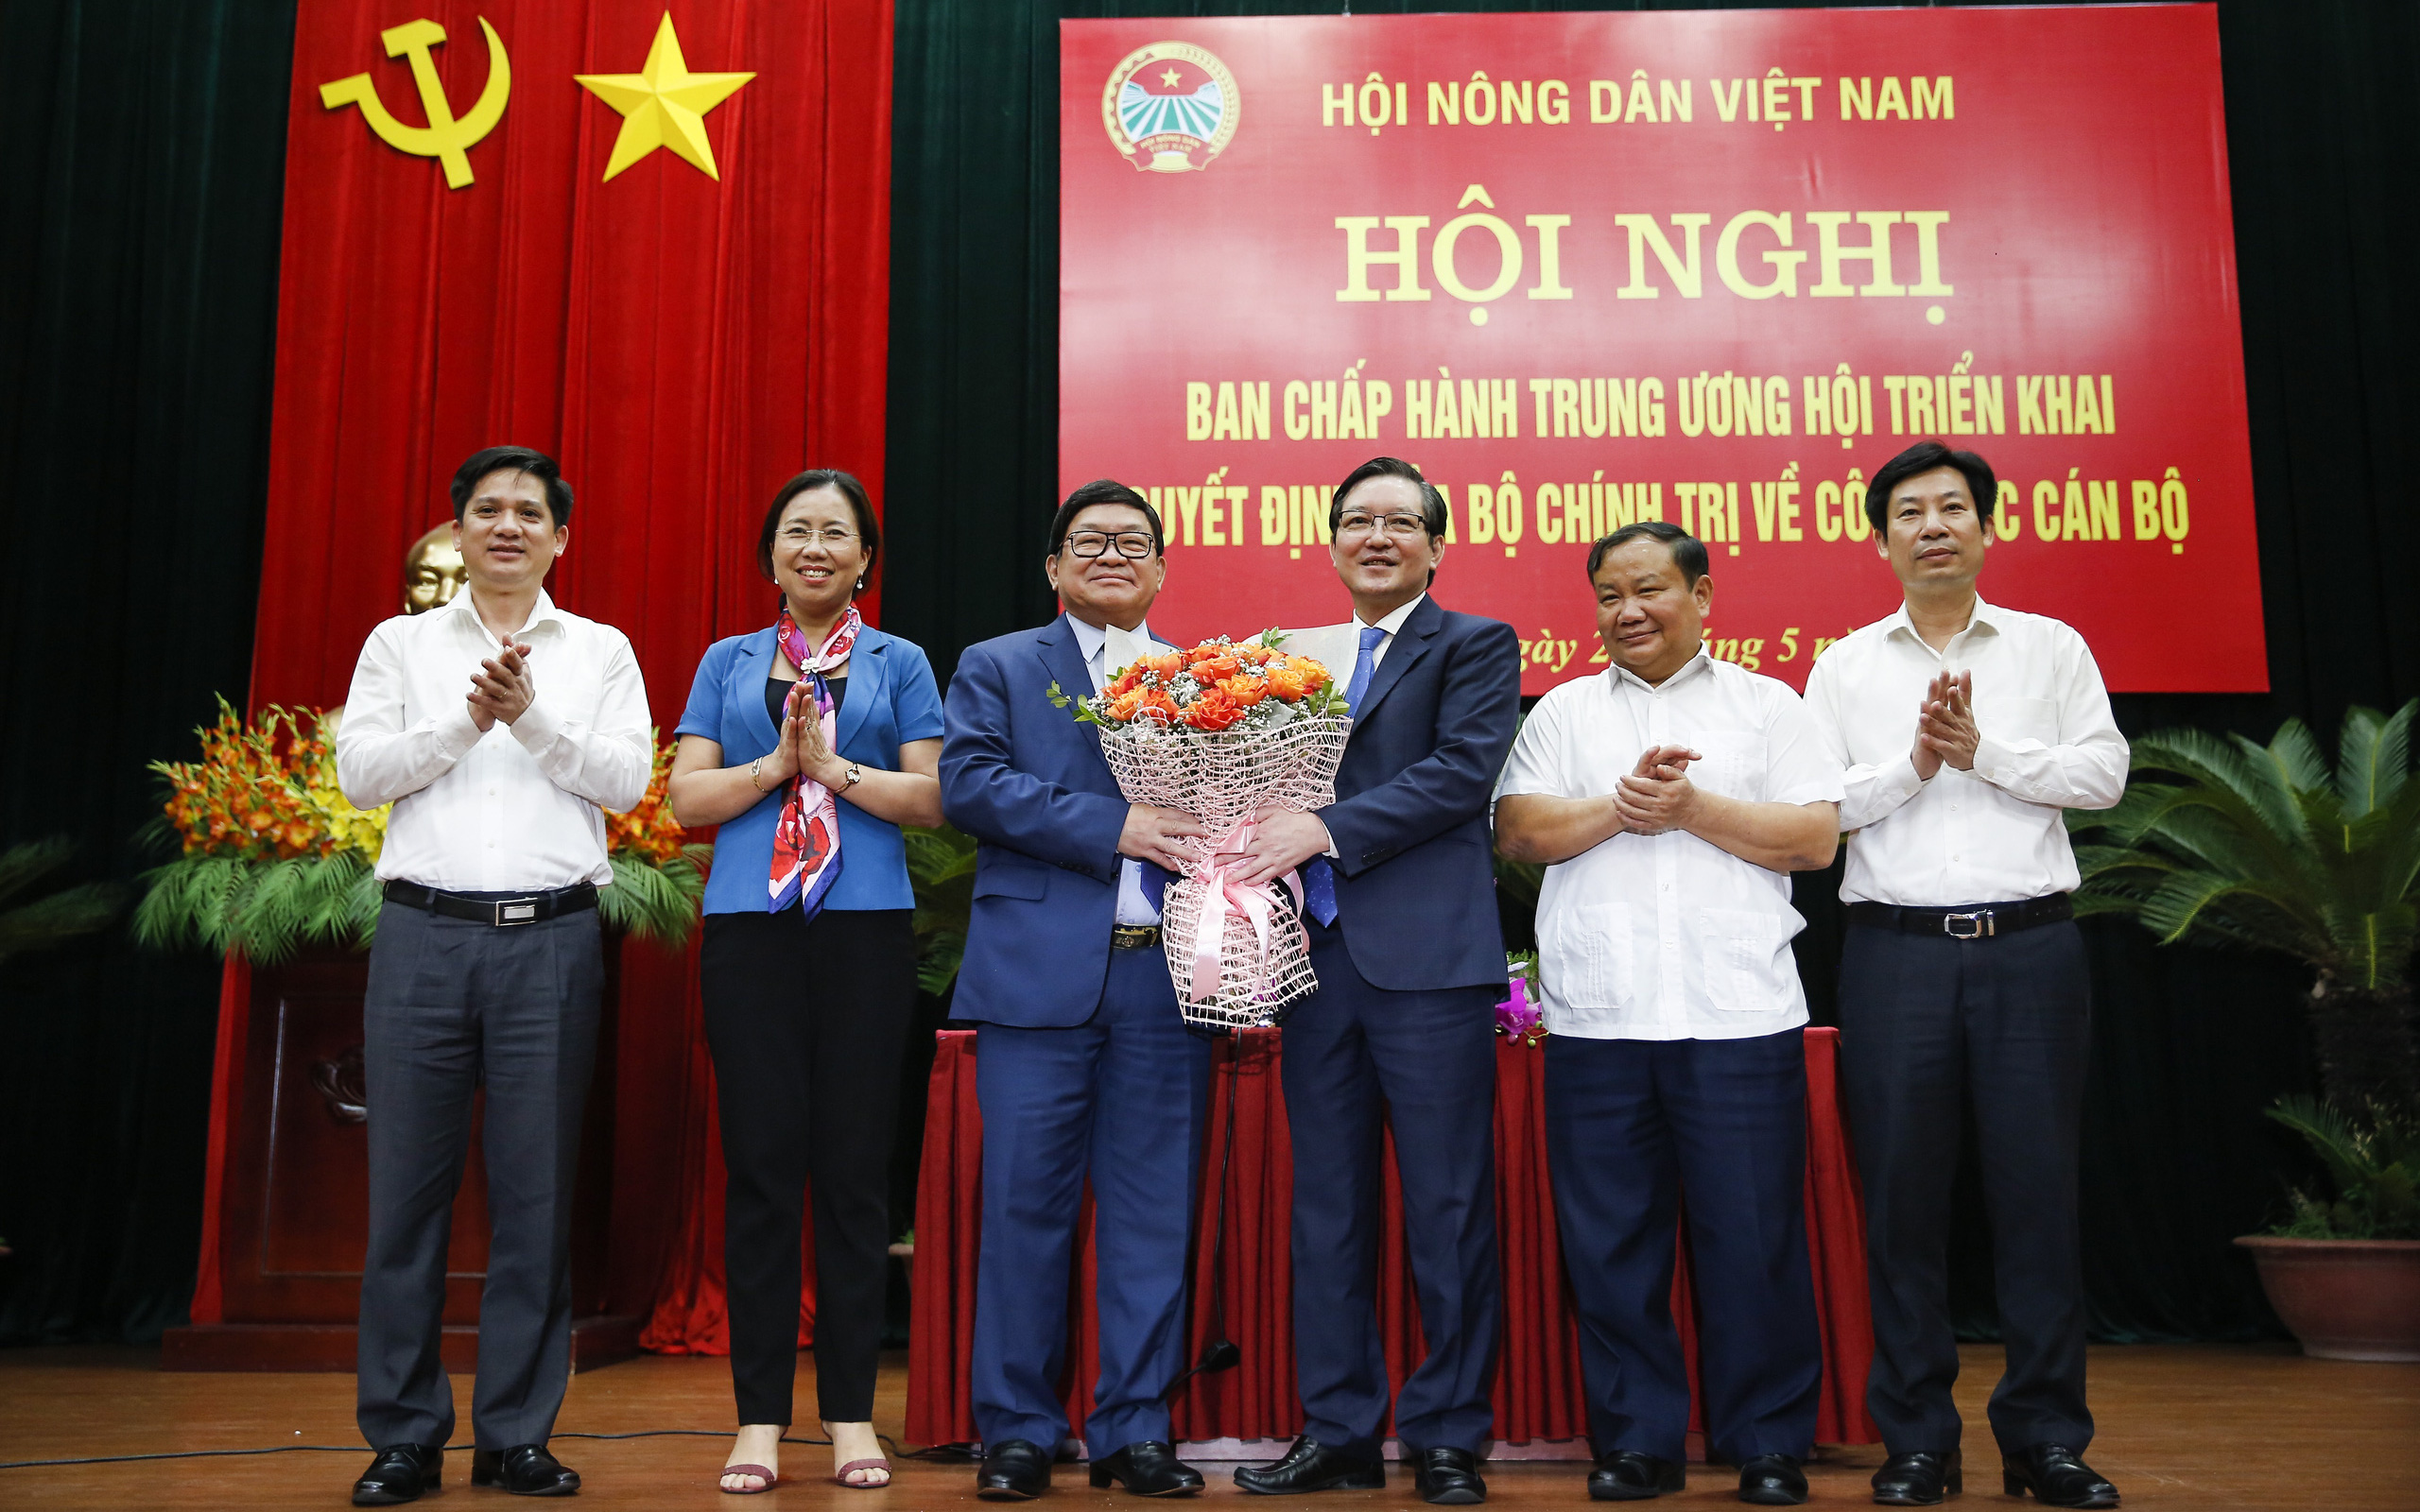 Ảnh: Hội nghị BCH T.Ư Hội Nông dân Việt Nam triển khai quyết định của Bộ Chính trị về công tác cán bộ